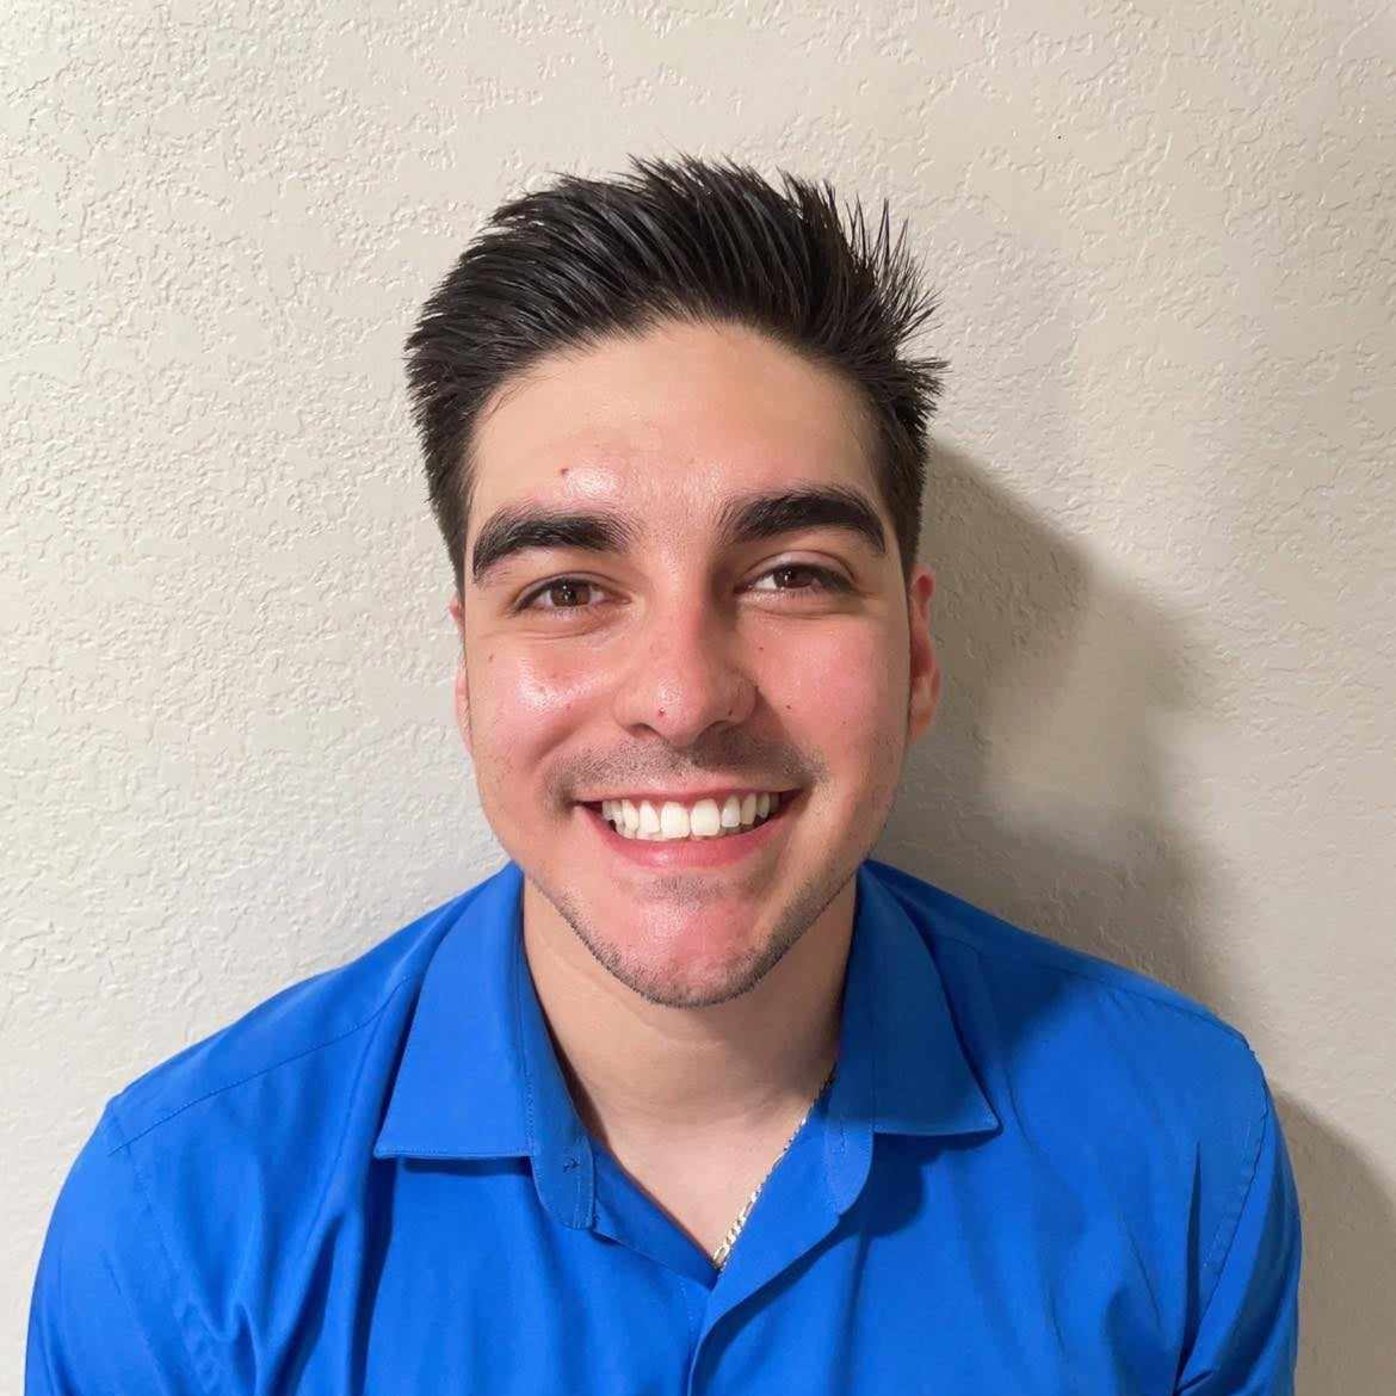 Justin Rodriguez is a substance use navigator at Sharp Chula Vista